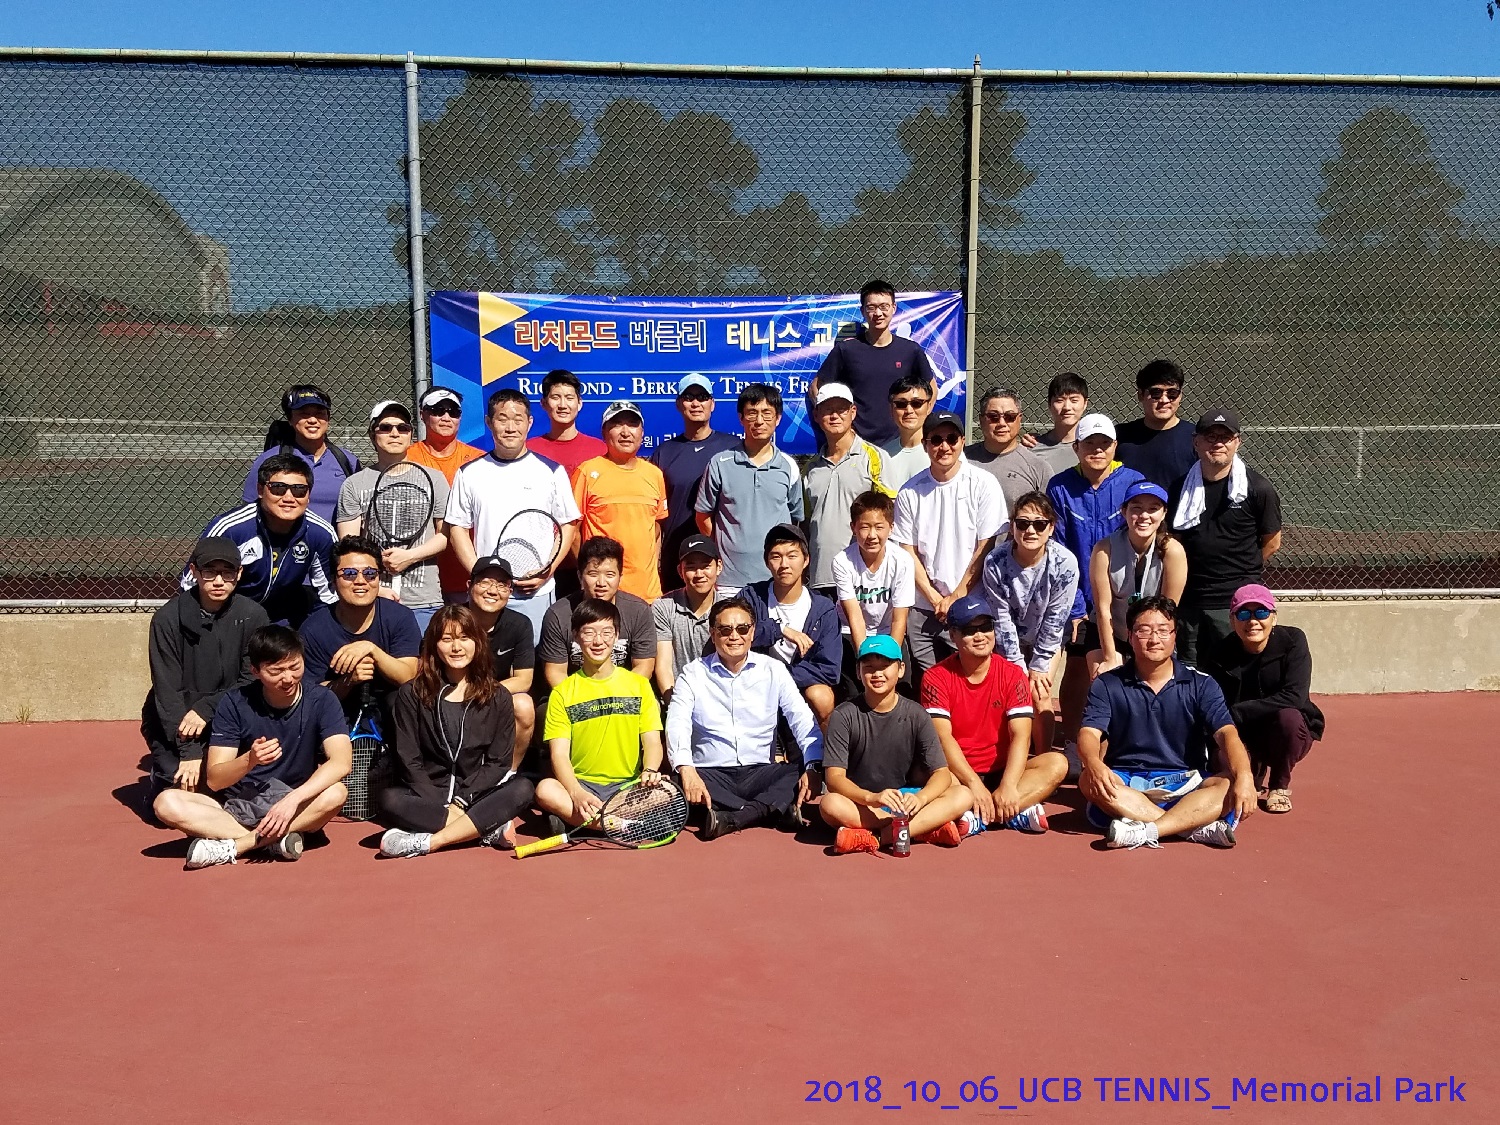 resized_2018_10_06_UCB Tennis at Memorial Park_114915.jpg